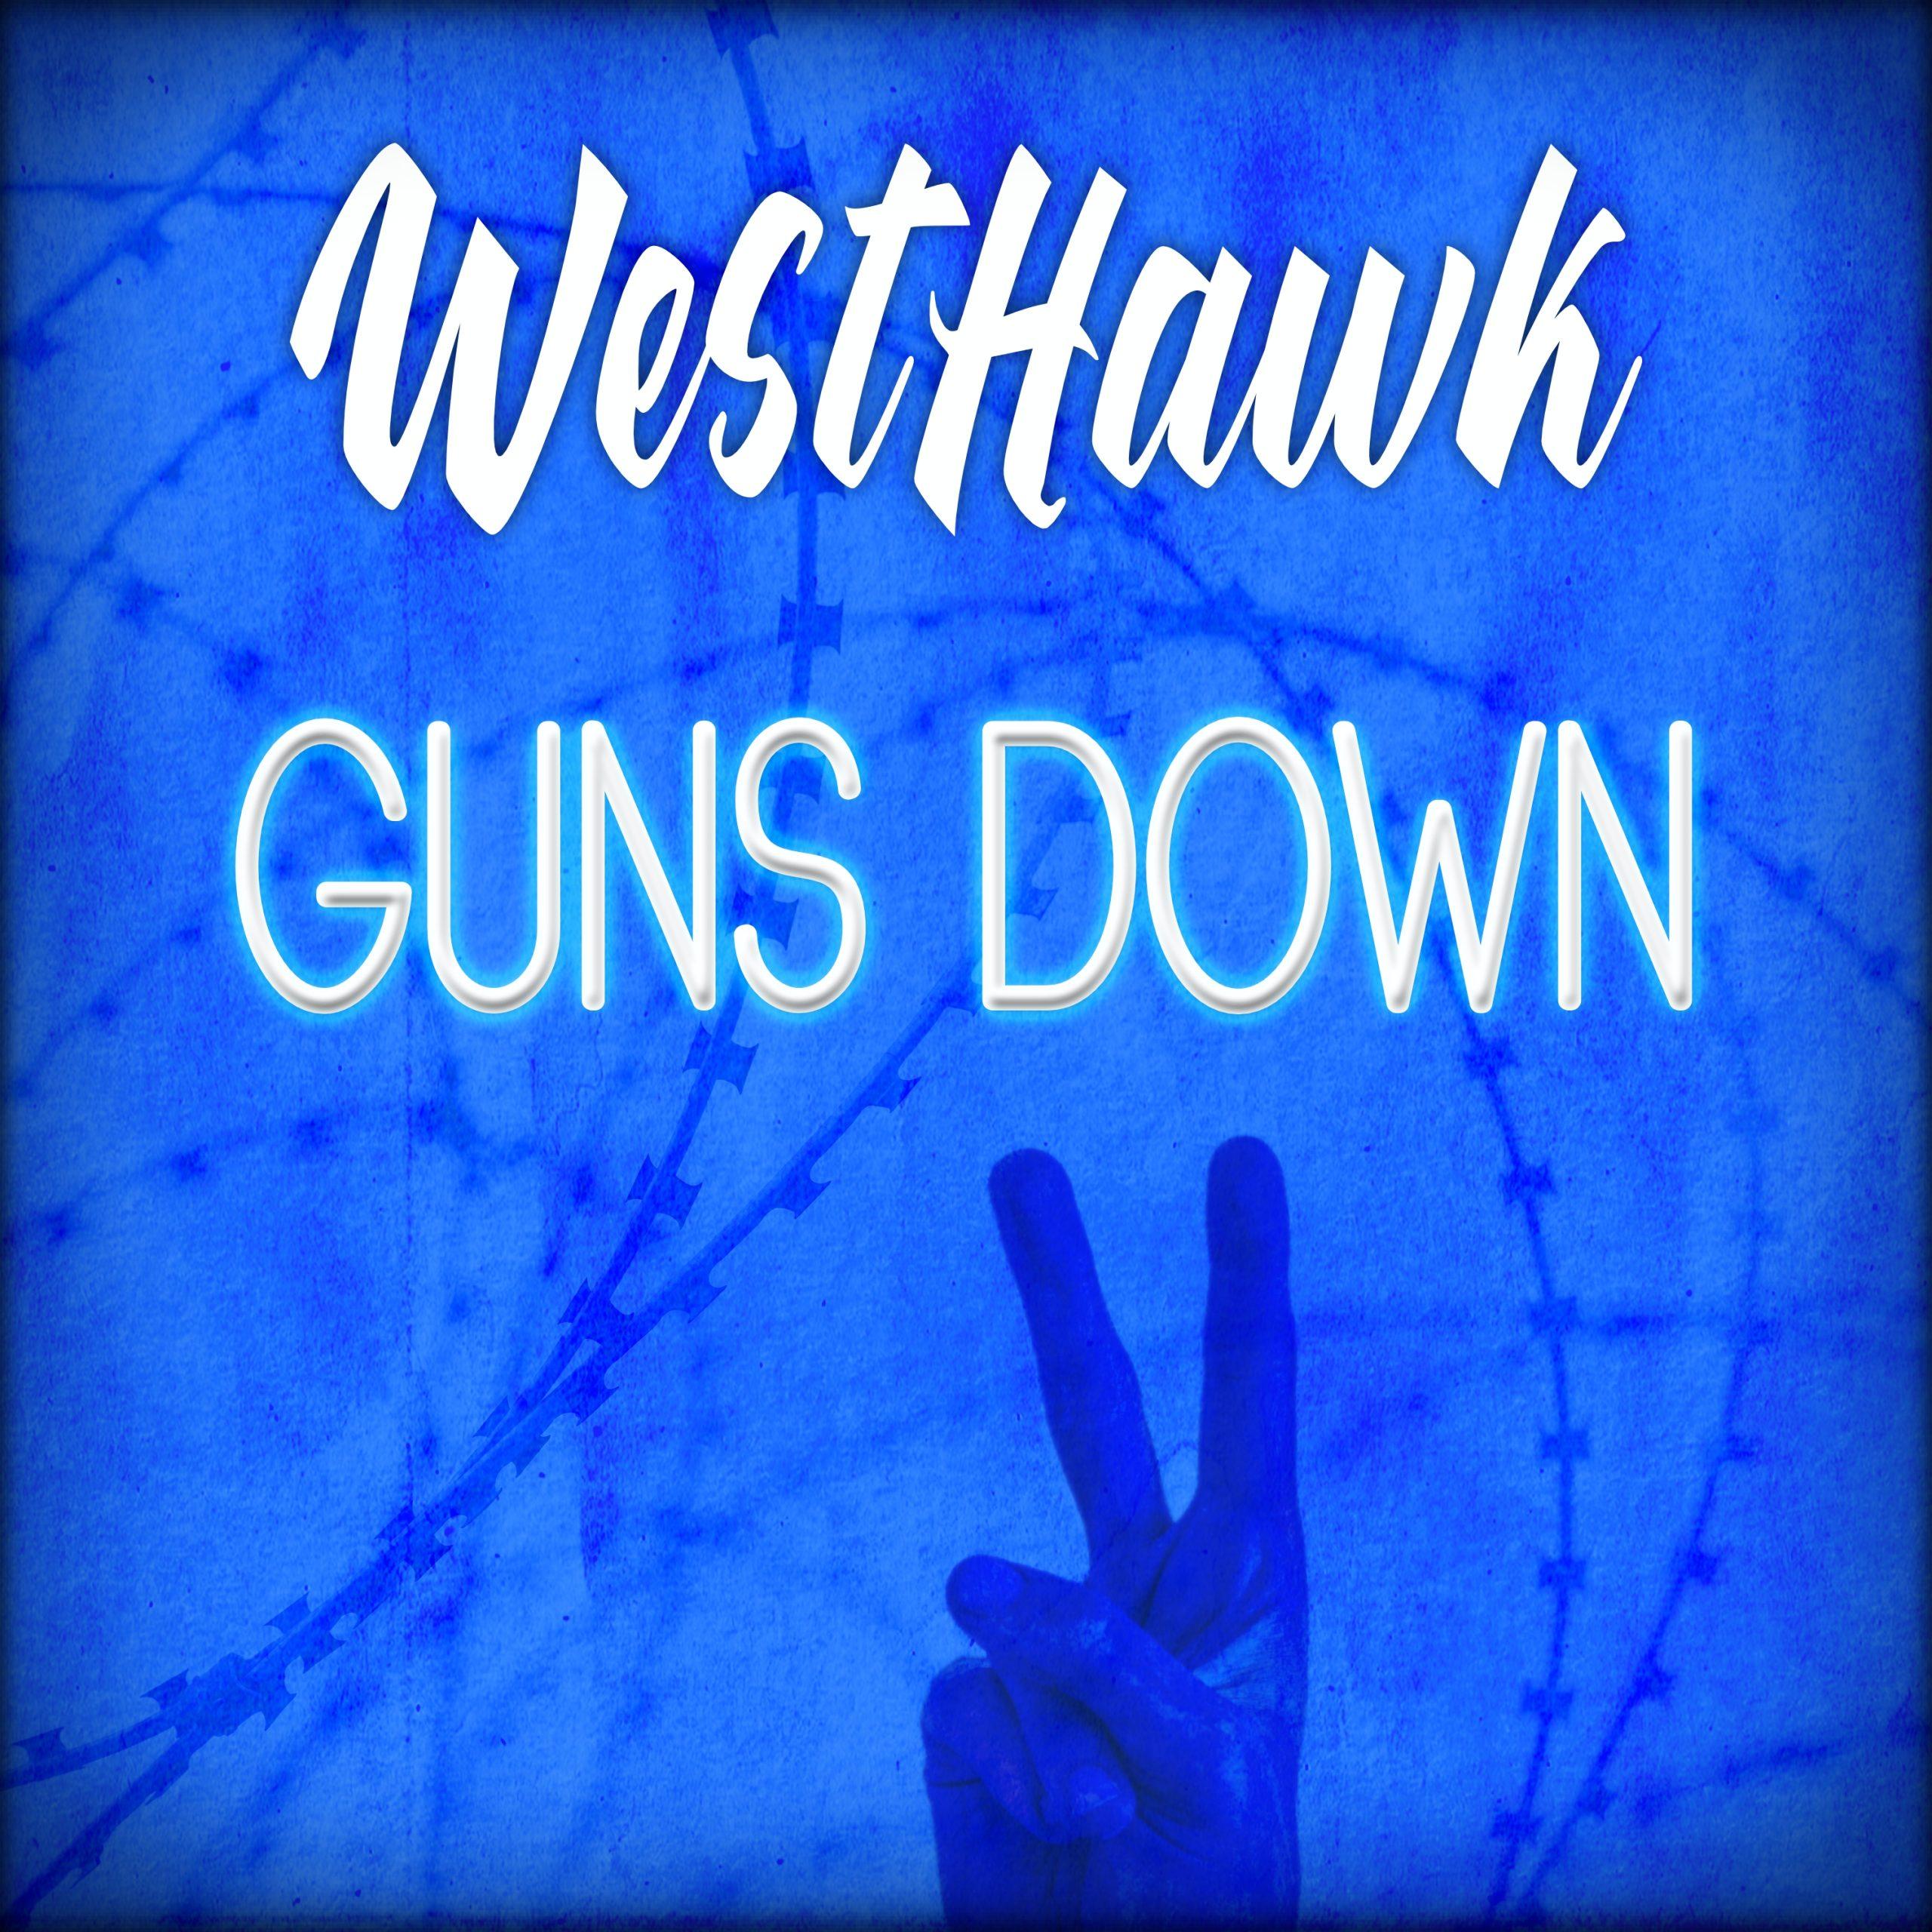 WestHawk